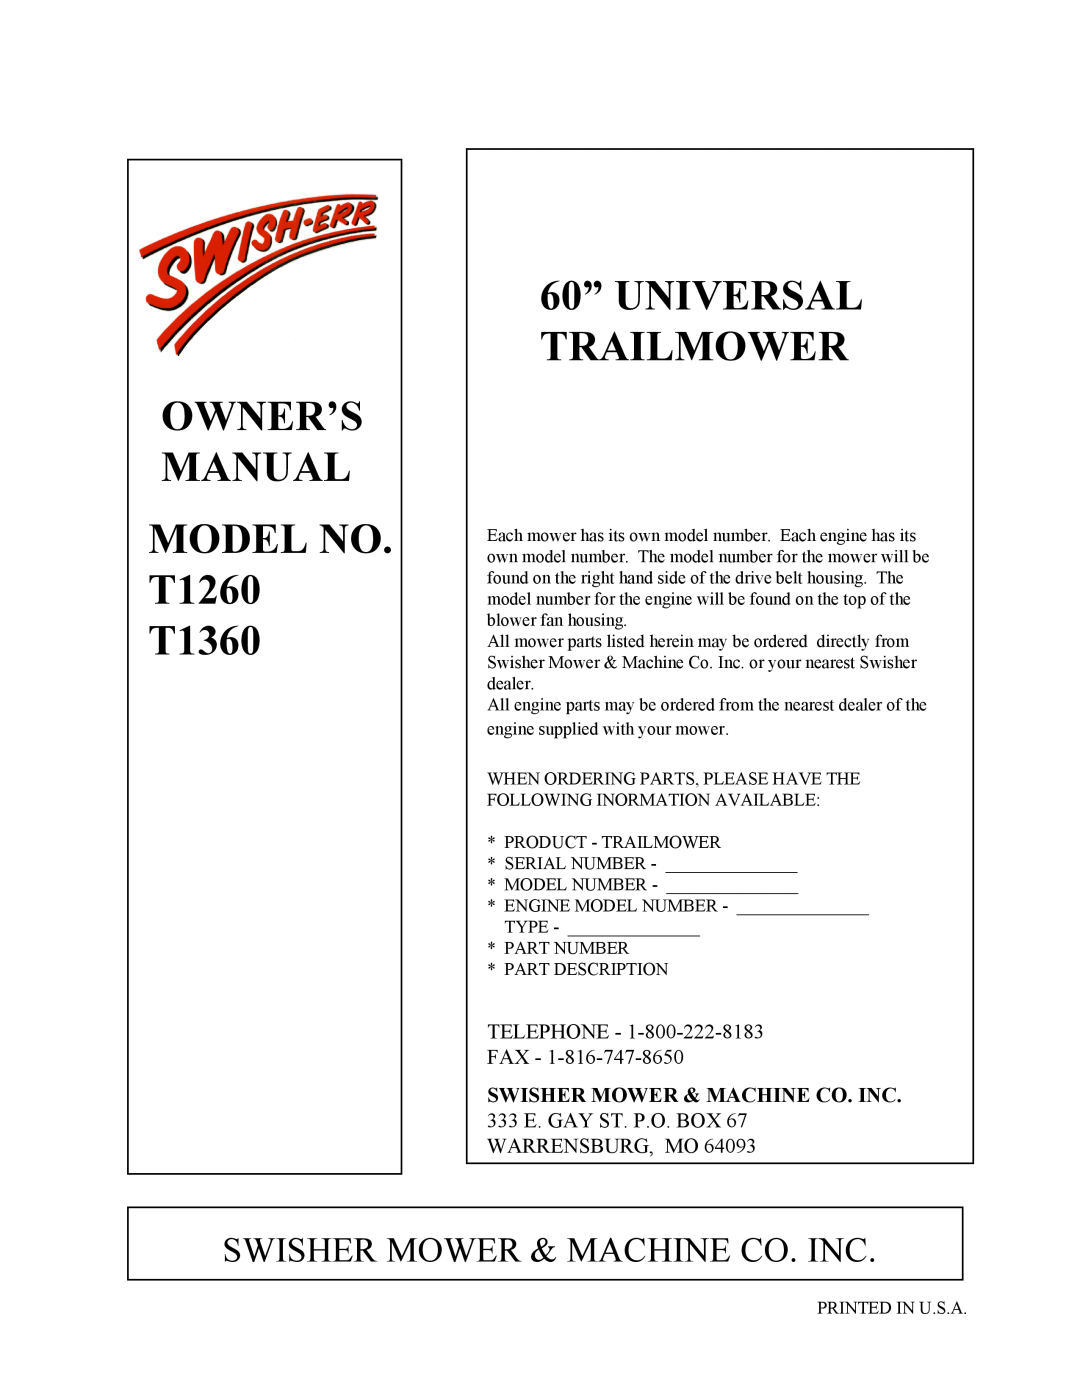 Swisher T1360 owner manual 60” UNIVERSAL TRAILMOWER, Swisher Mower & Machine Co. Inc 